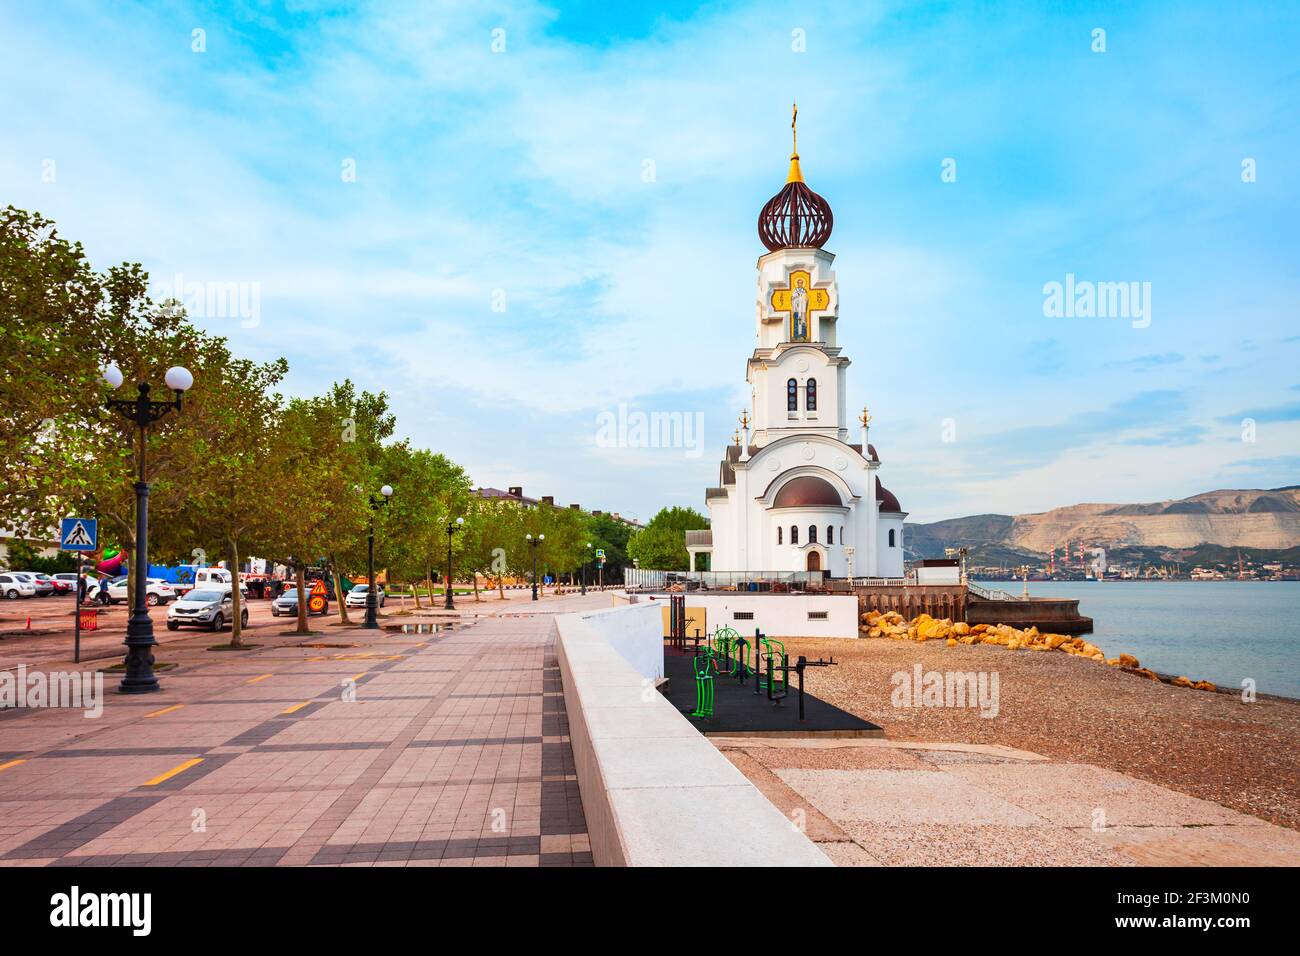 Église du Saint-Prince Pierre et de la princesse Fevronia dans la ville de Novorossiysk. Novorossiysk est le principal port de la mer Noire à Krasnodar Krai, en Russie. Banque D'Images